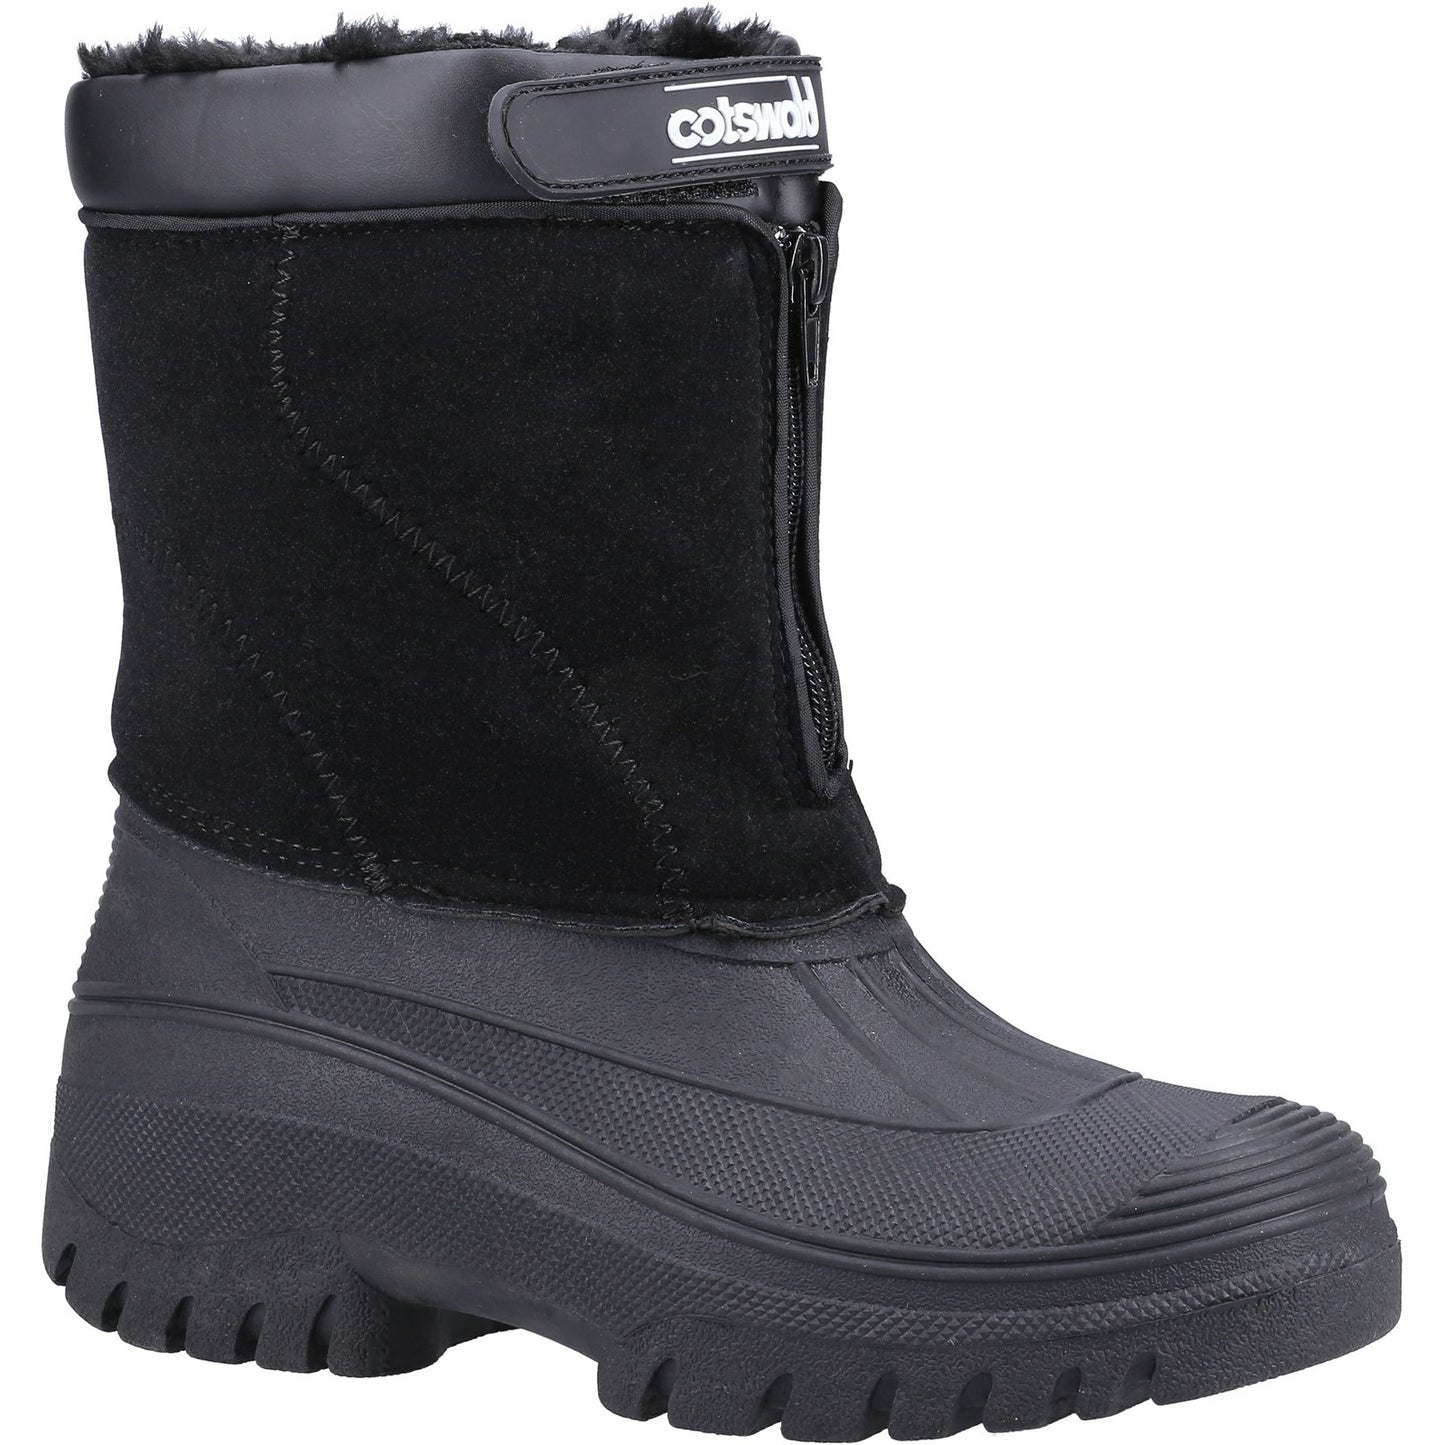 Venture Waterproof Winter Boot, Cotswold